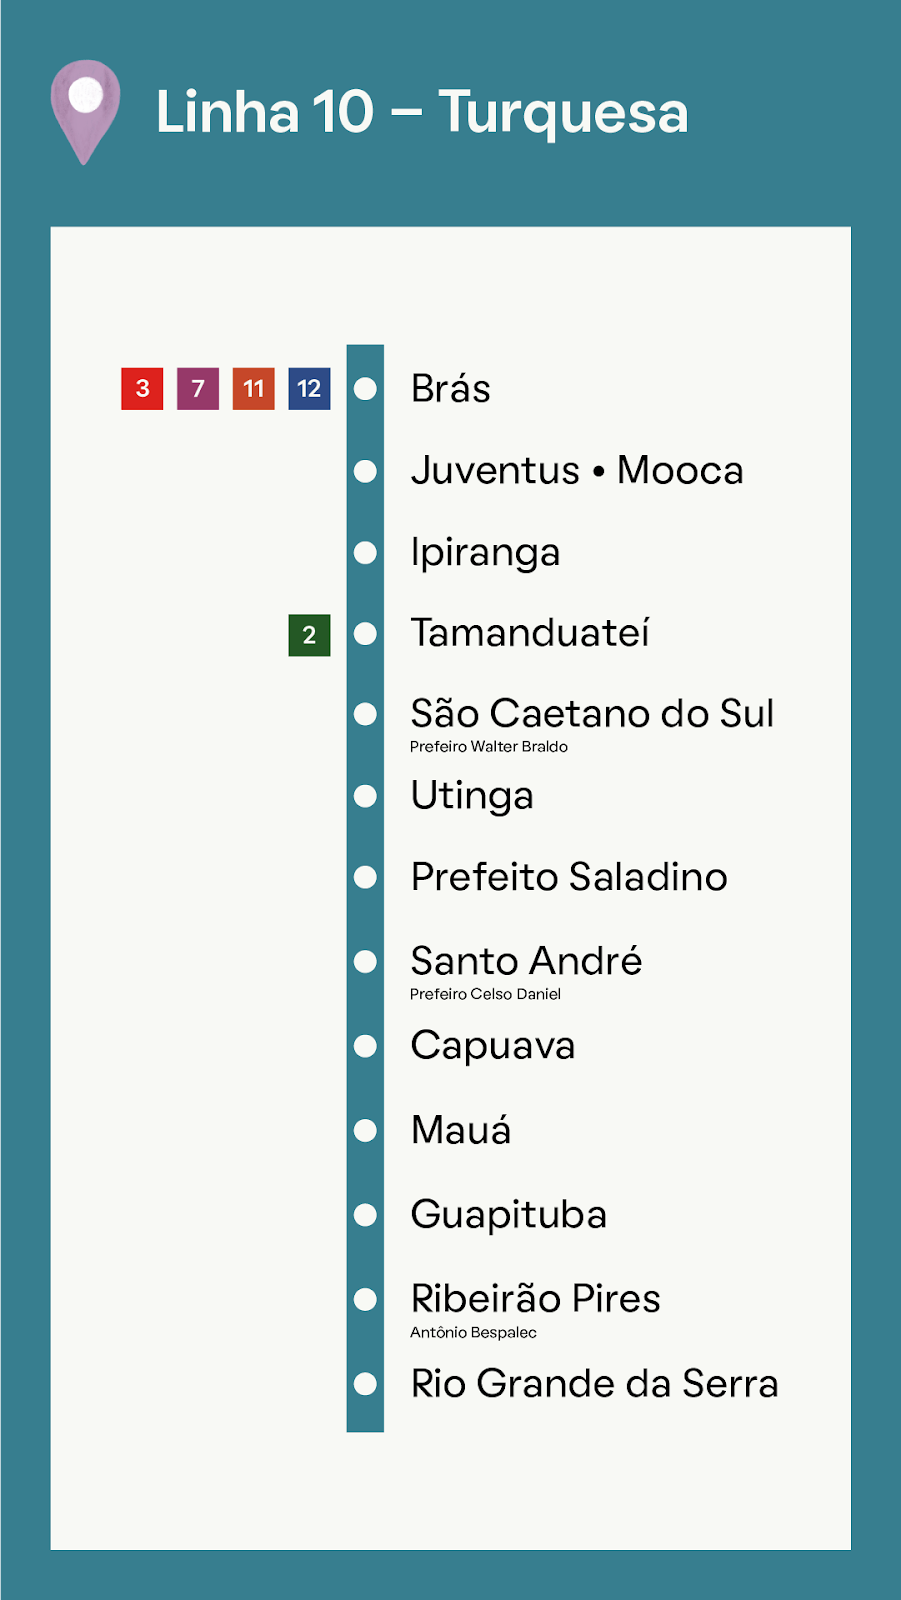 Foto que ilustra as estações da Linha 10- Turquesa, a Estação Brás pertence à ela.